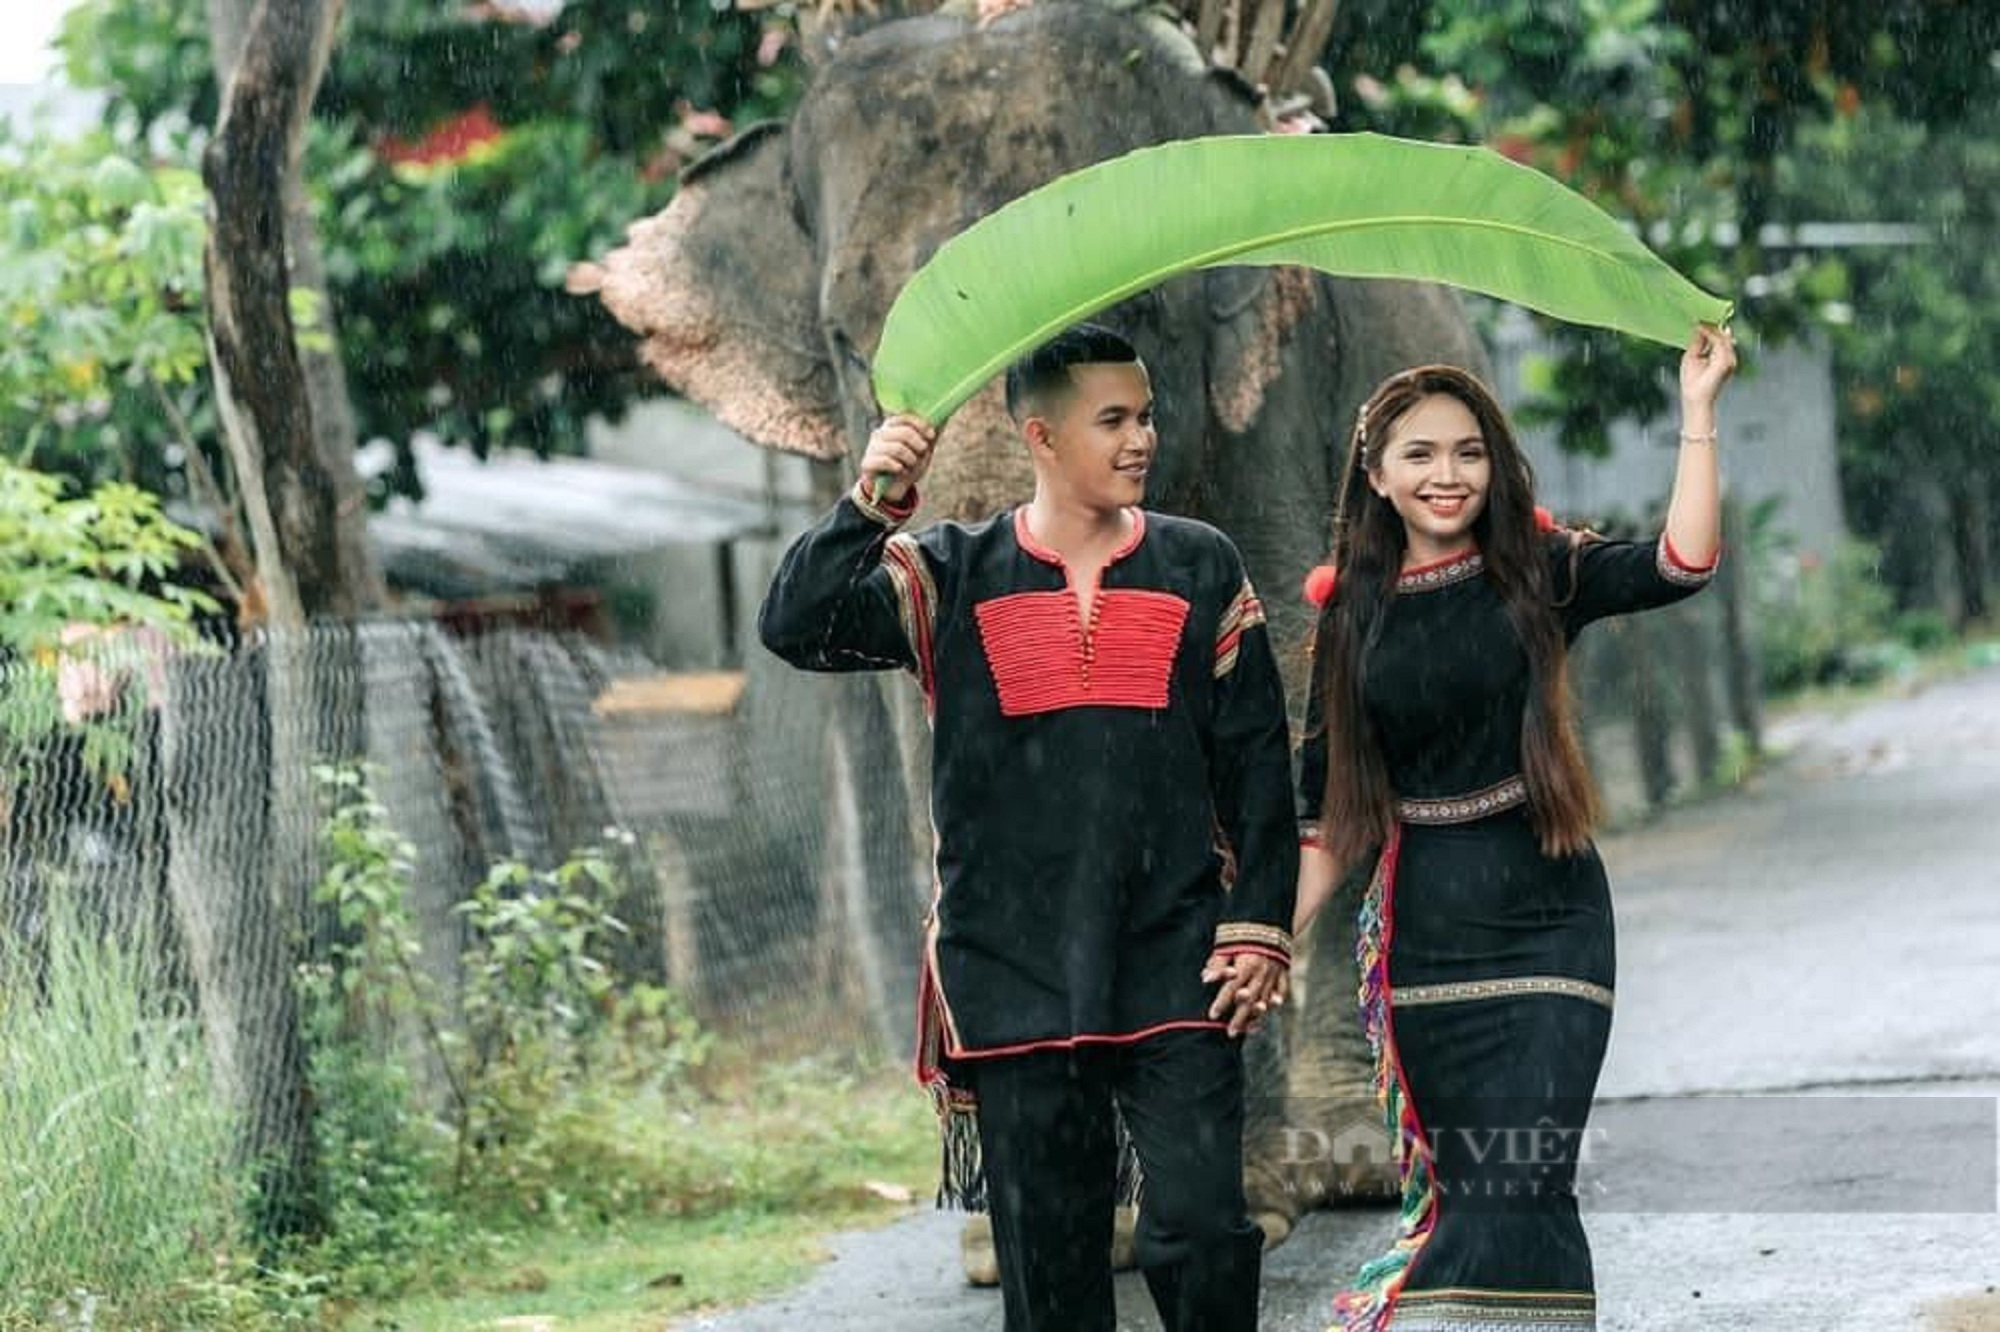 Trang phục truyền thống của Việt Nam rất đa dạng và đẹp mắt. Hãy cùng khám phá hình ảnh về trang phục truyền thống của Việt Nam để hiểu hơn về văn hóa và nghệ thuật của đất nước này.